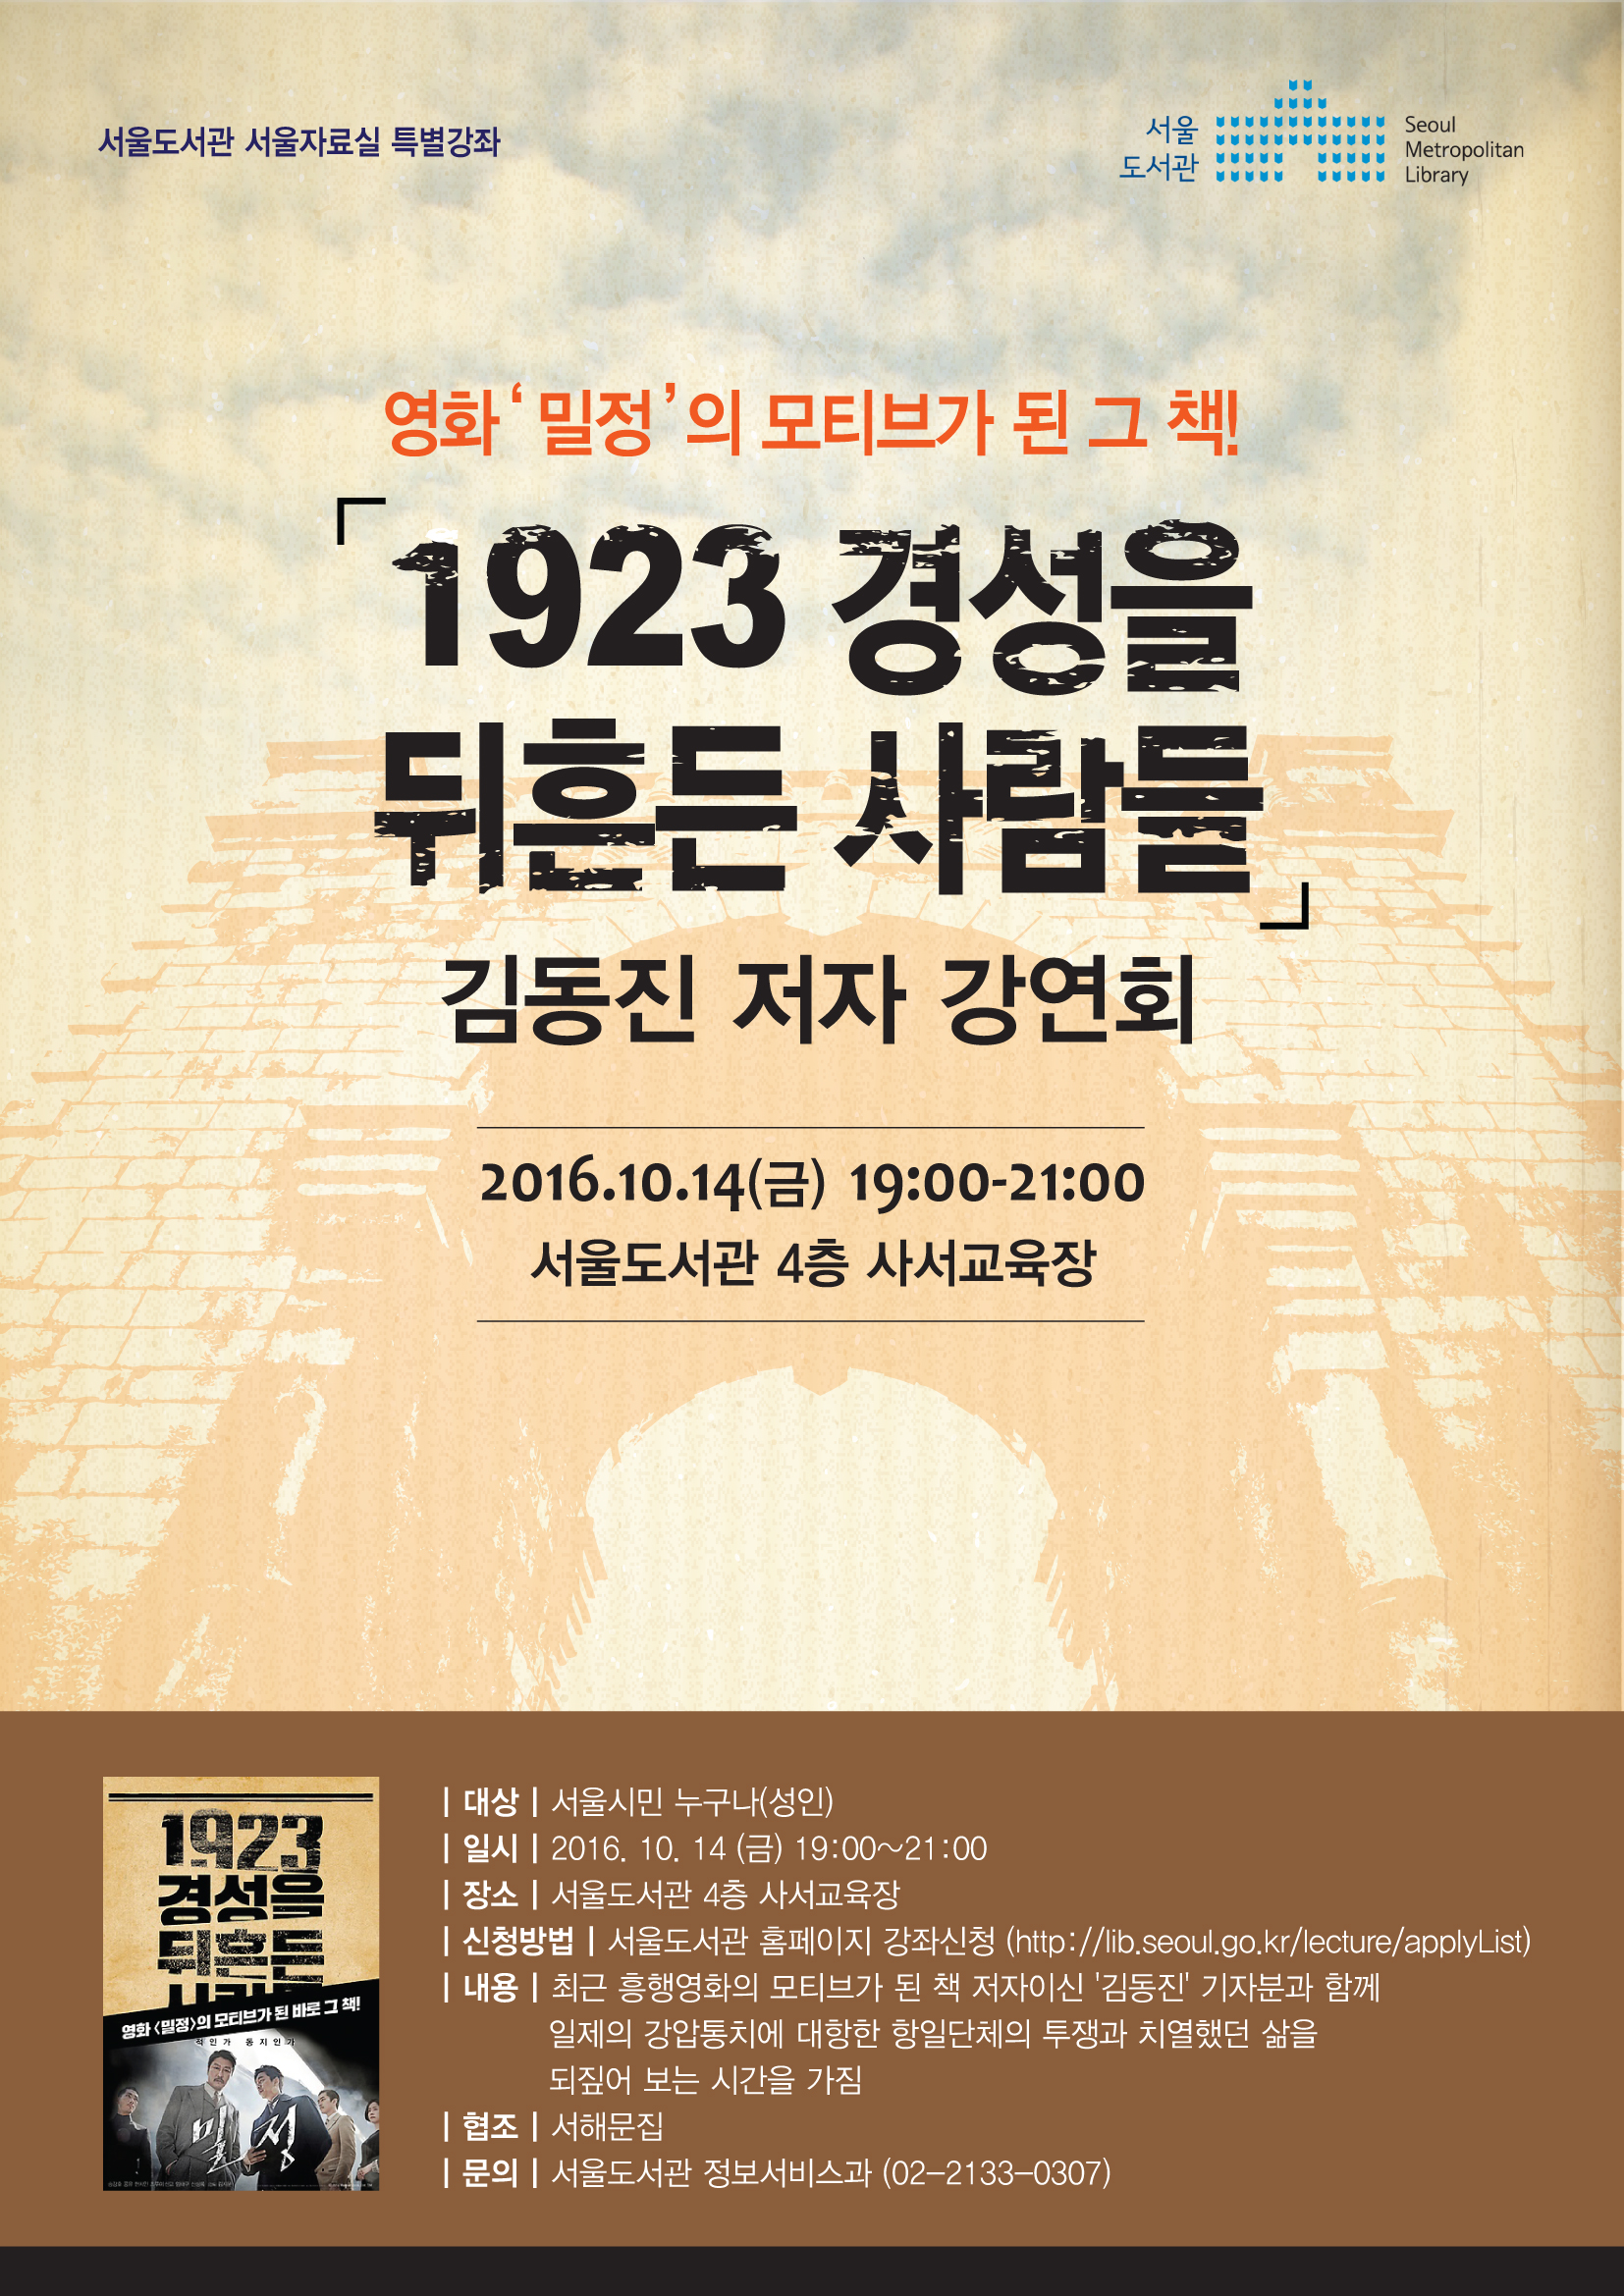 영화 '밀정'의 모티브가 된 그 책! 서울도서관『1923 경성을 뒤흔든 사람들 – 저자와의 만남』